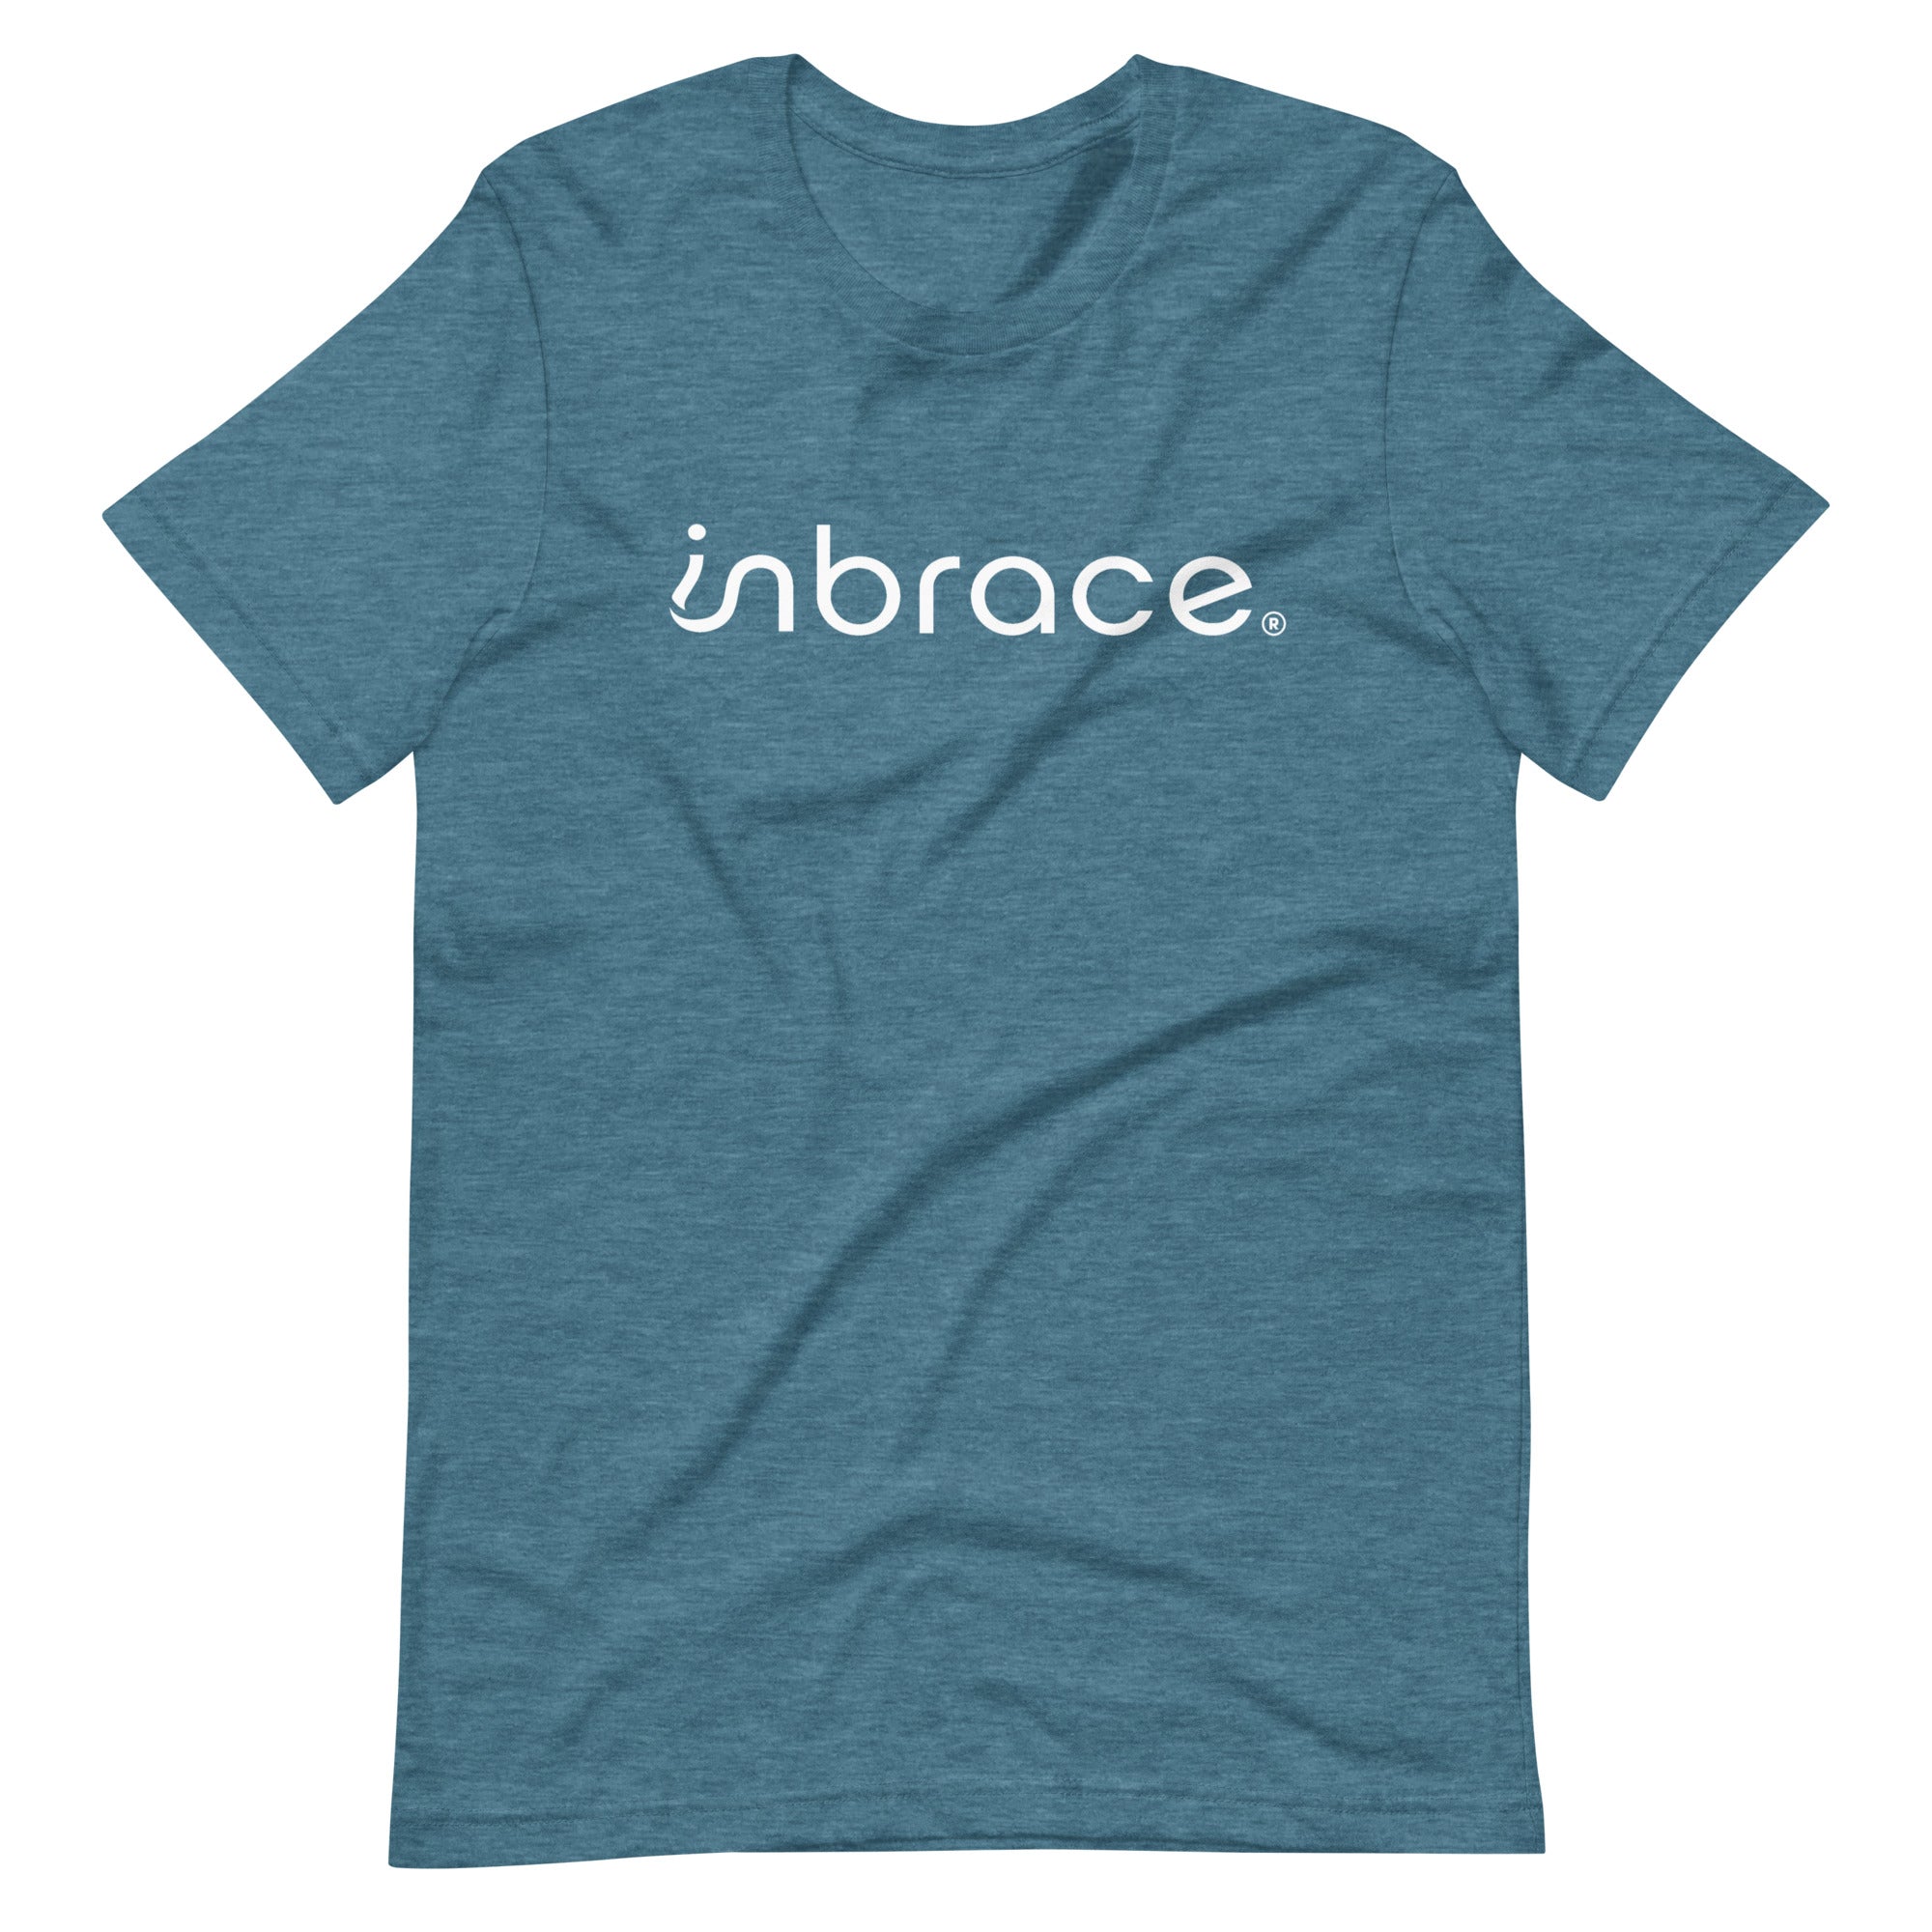 InBrace Unisex t-shirt